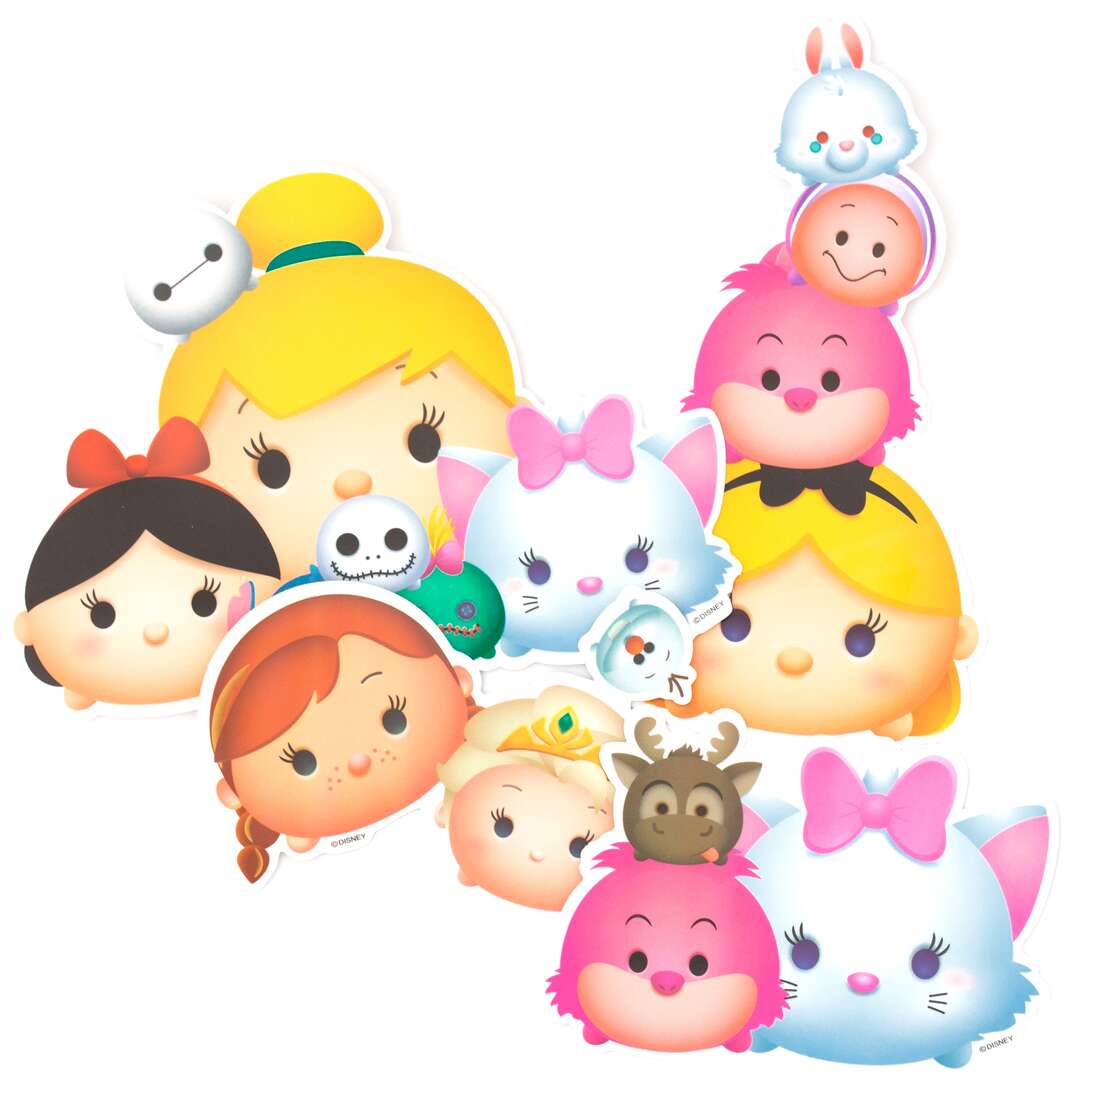 Disney Princess animal big stickers by Kamio Japan - modeS4u